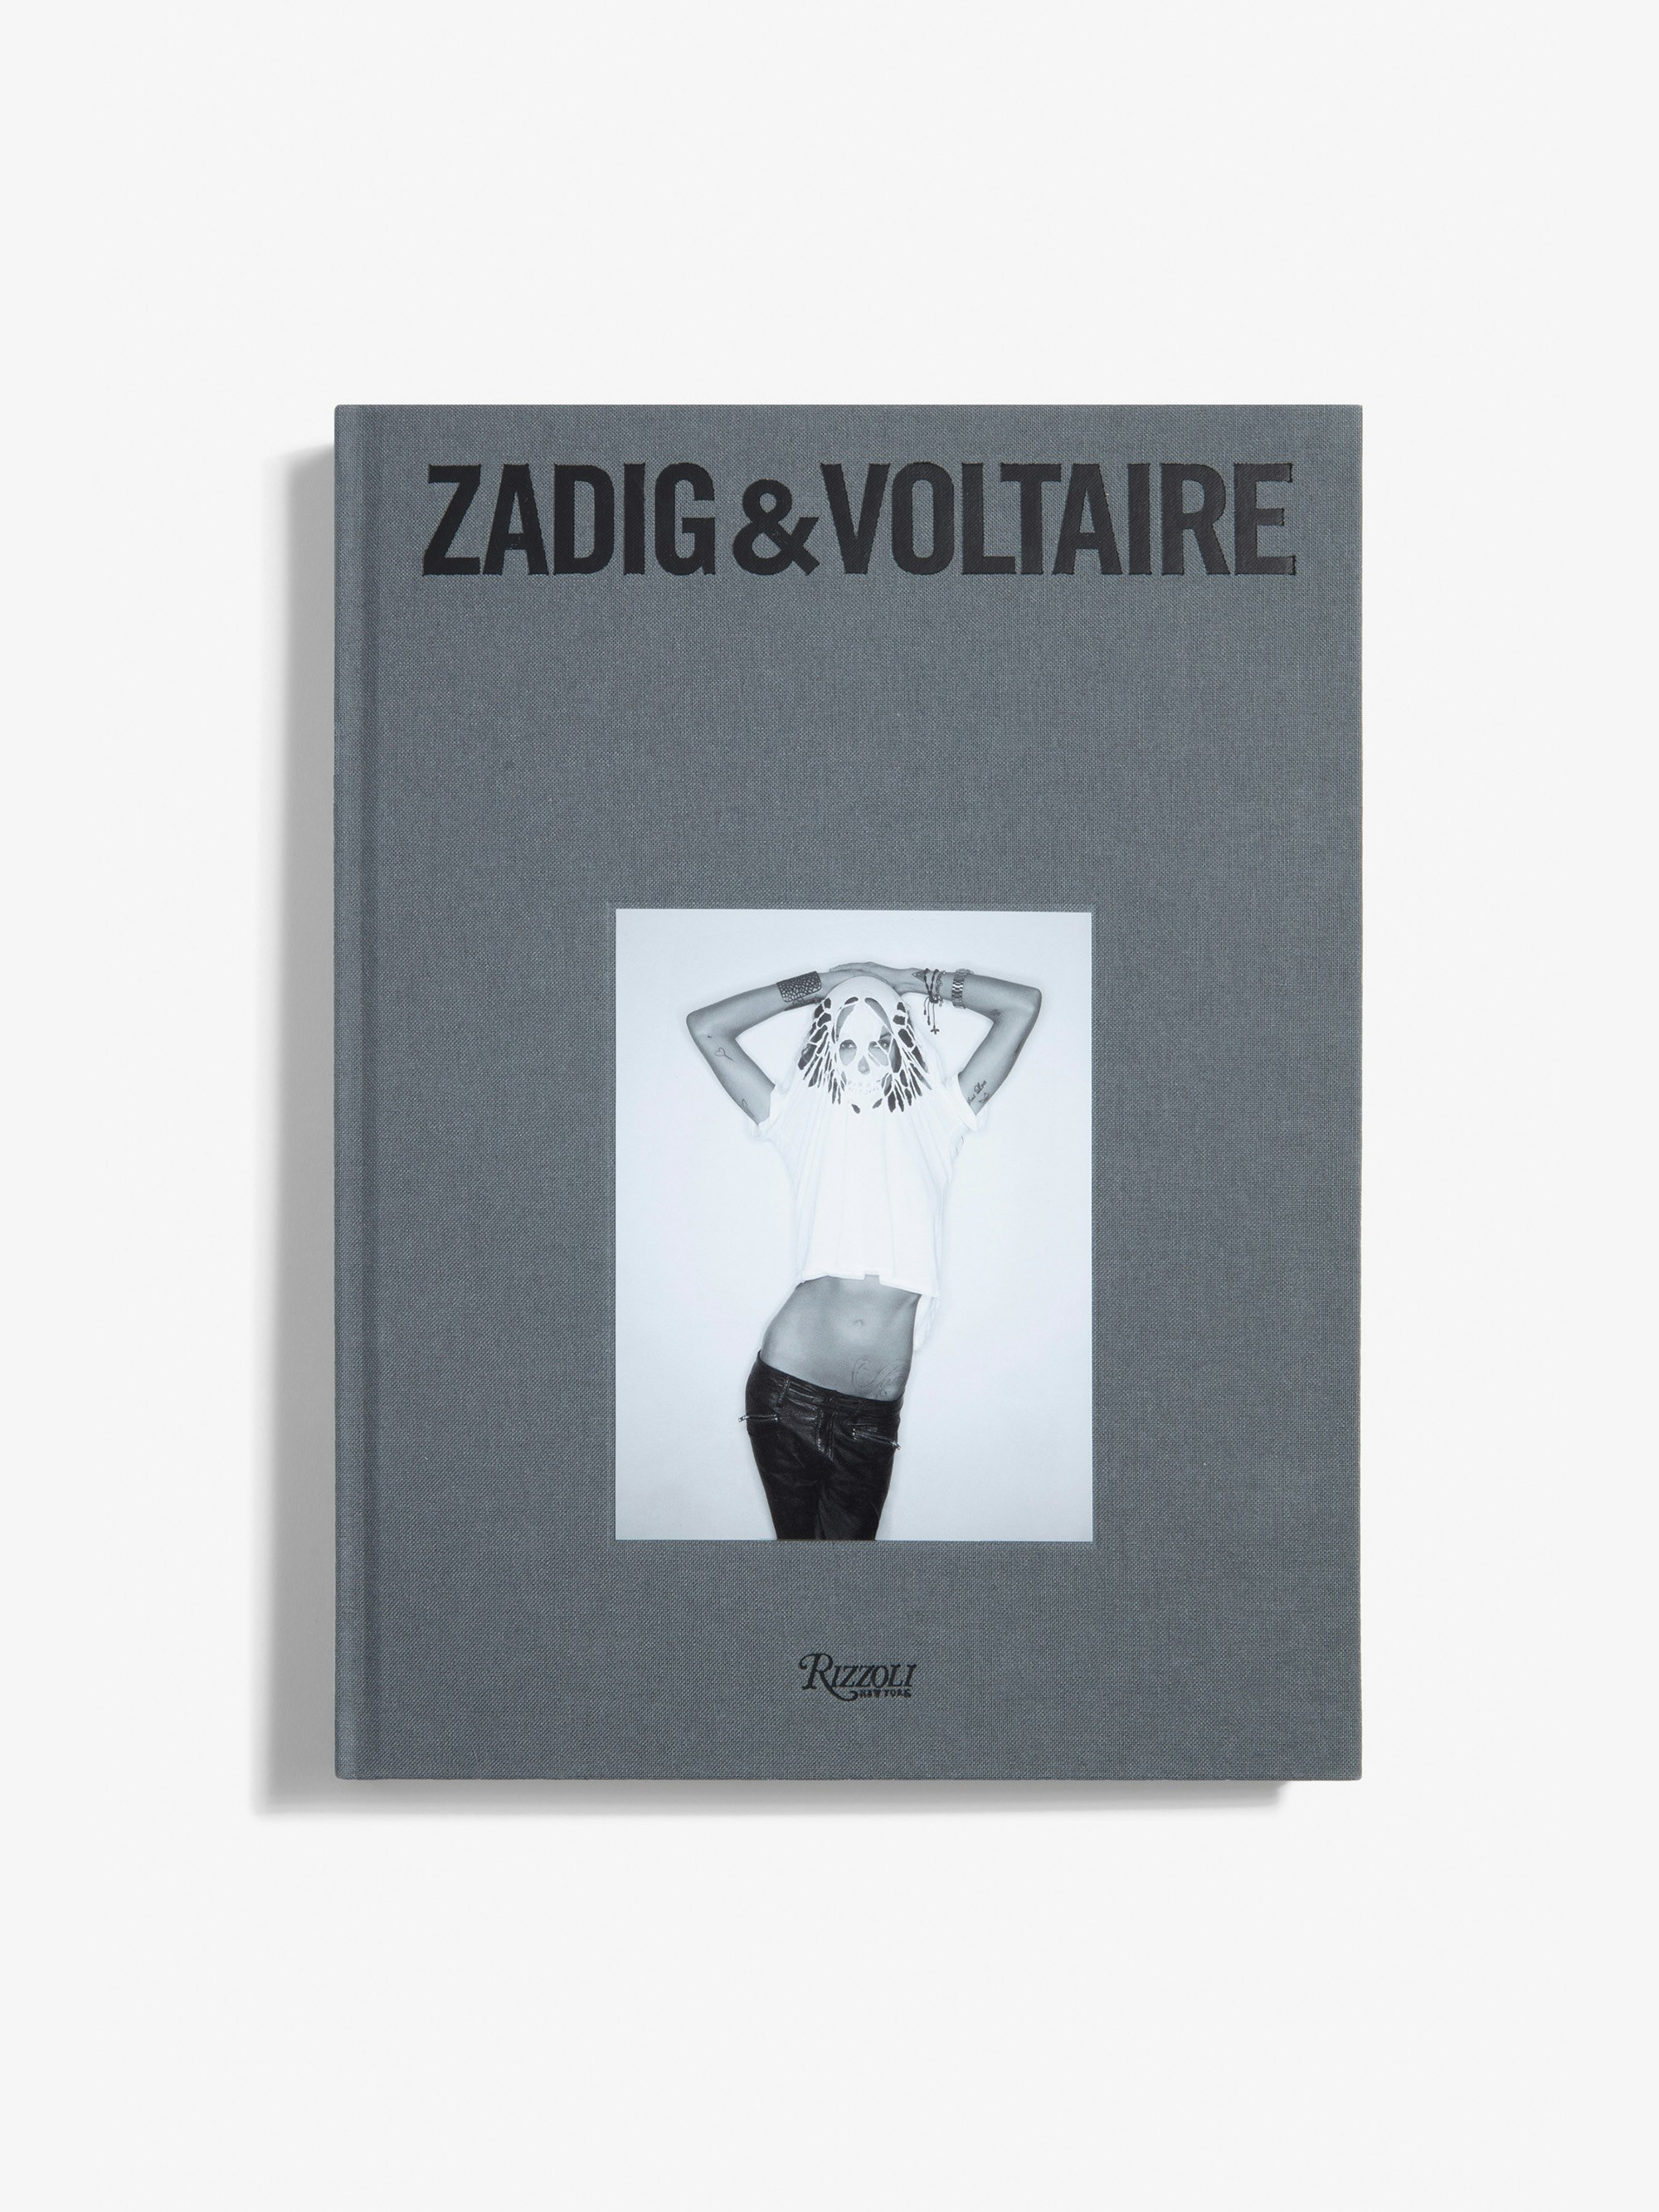 Libro  "Zadig&Voltaire: Established 1997 in Paris" - Versione Inglese - La prima monografia sul marchio Zadig&Voltaire pubblicata in occasione del suo 25° anniversario - Versione inglese.